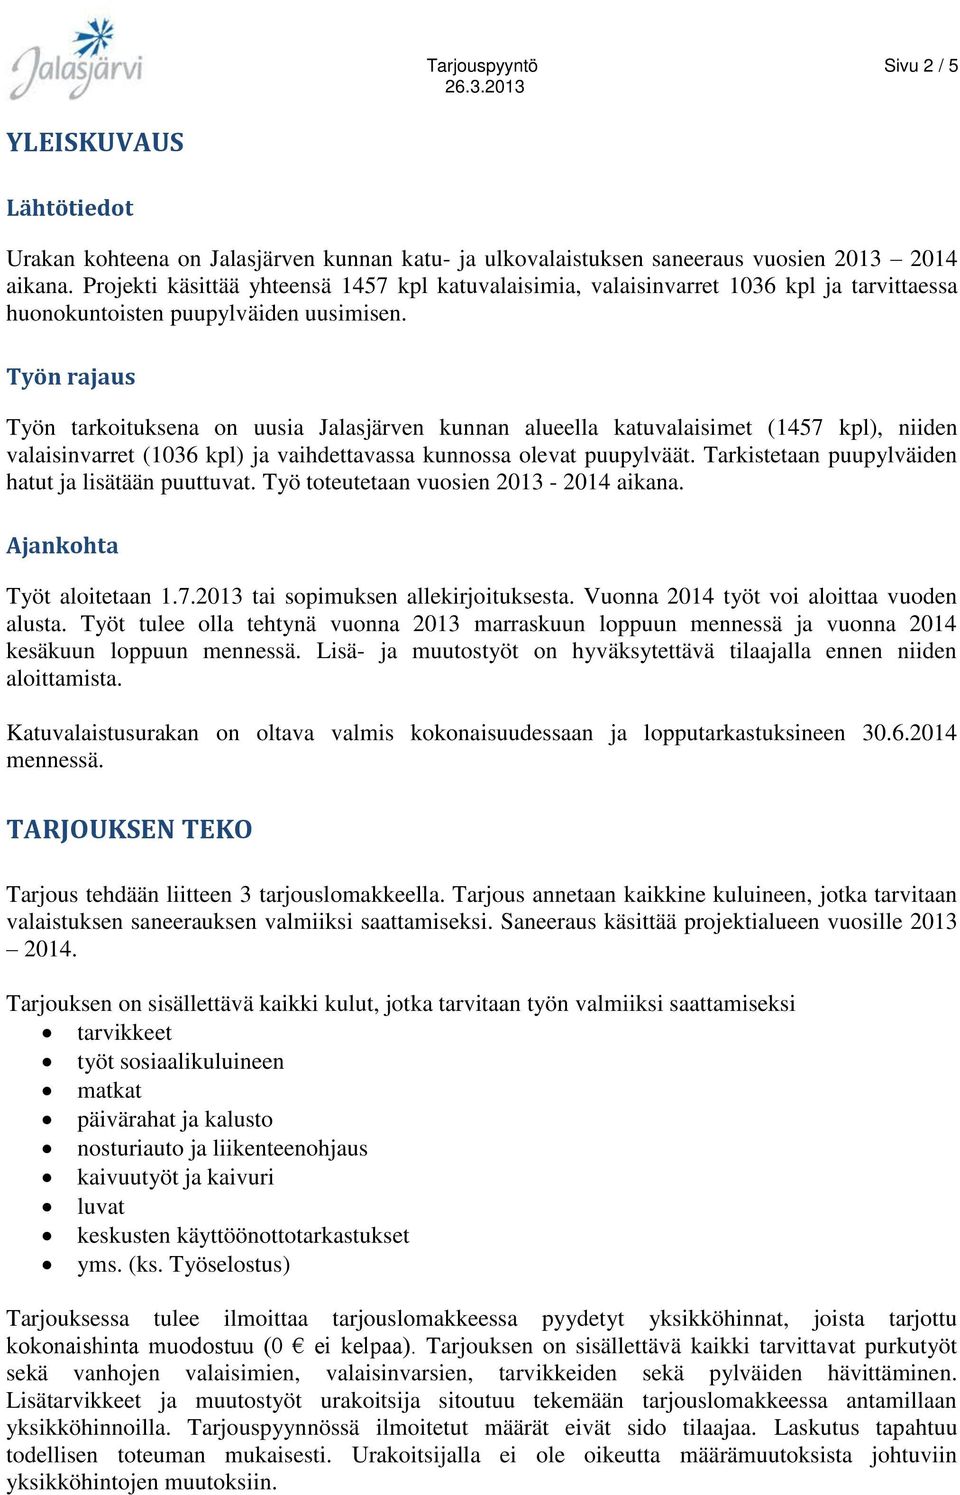 Työn rajaus Työn tarkoituksena on uusia Jalasjärven kunnan alueella katuvalaisimet (1457 kpl), niiden valaisinvarret (1036 kpl) ja vaihdettavassa kunnossa olevat puupylväät.